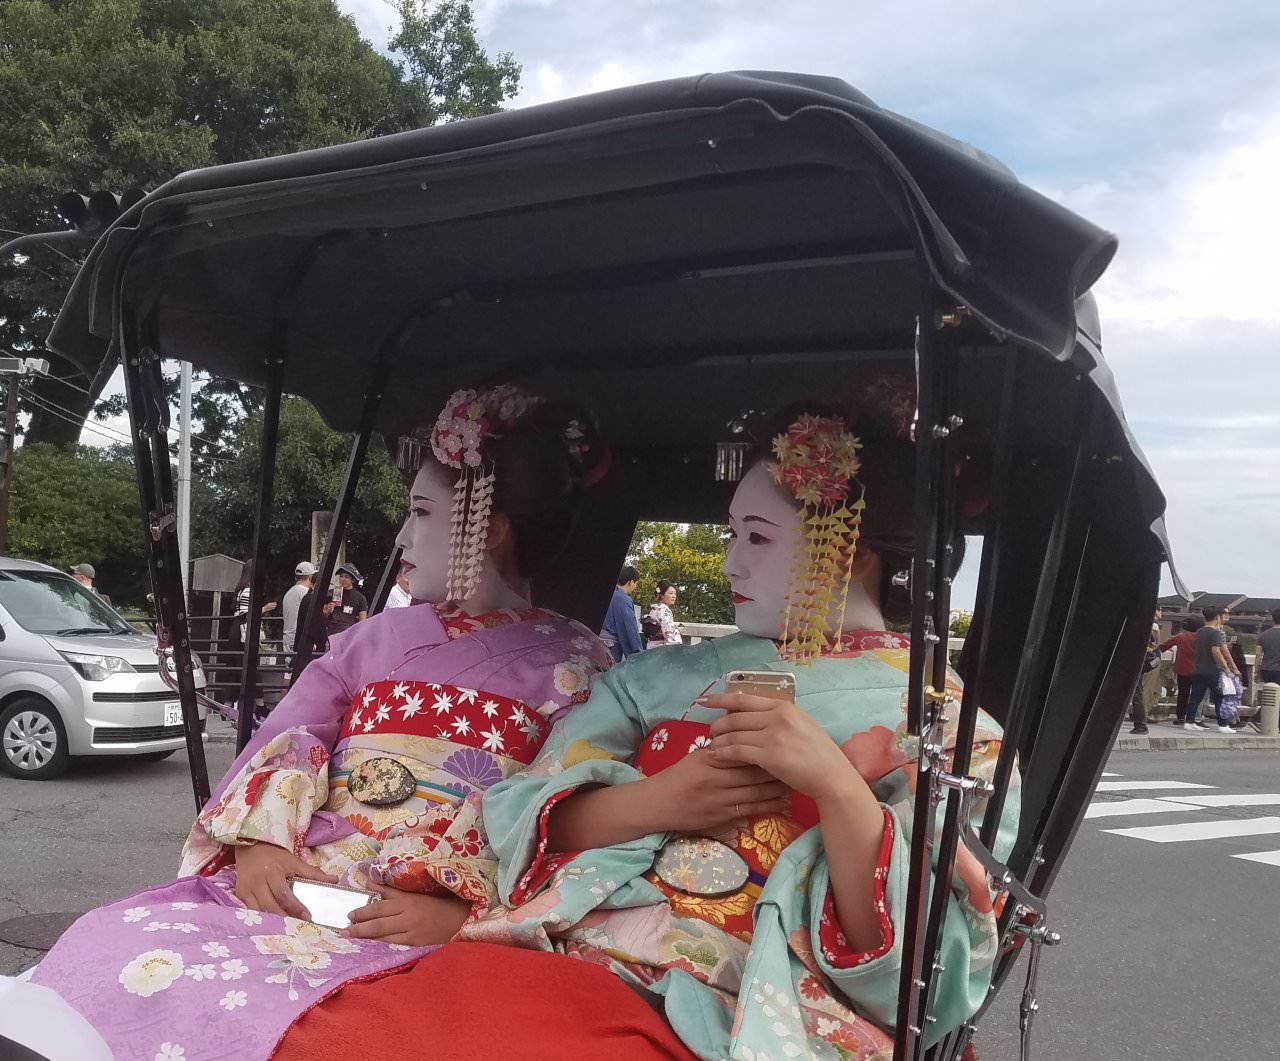 兩位少女穿著日本傳統服裝和打扮，坐上傳統人力車，但手上亦不忘拿著手機，可說是古今時空共融的組合。